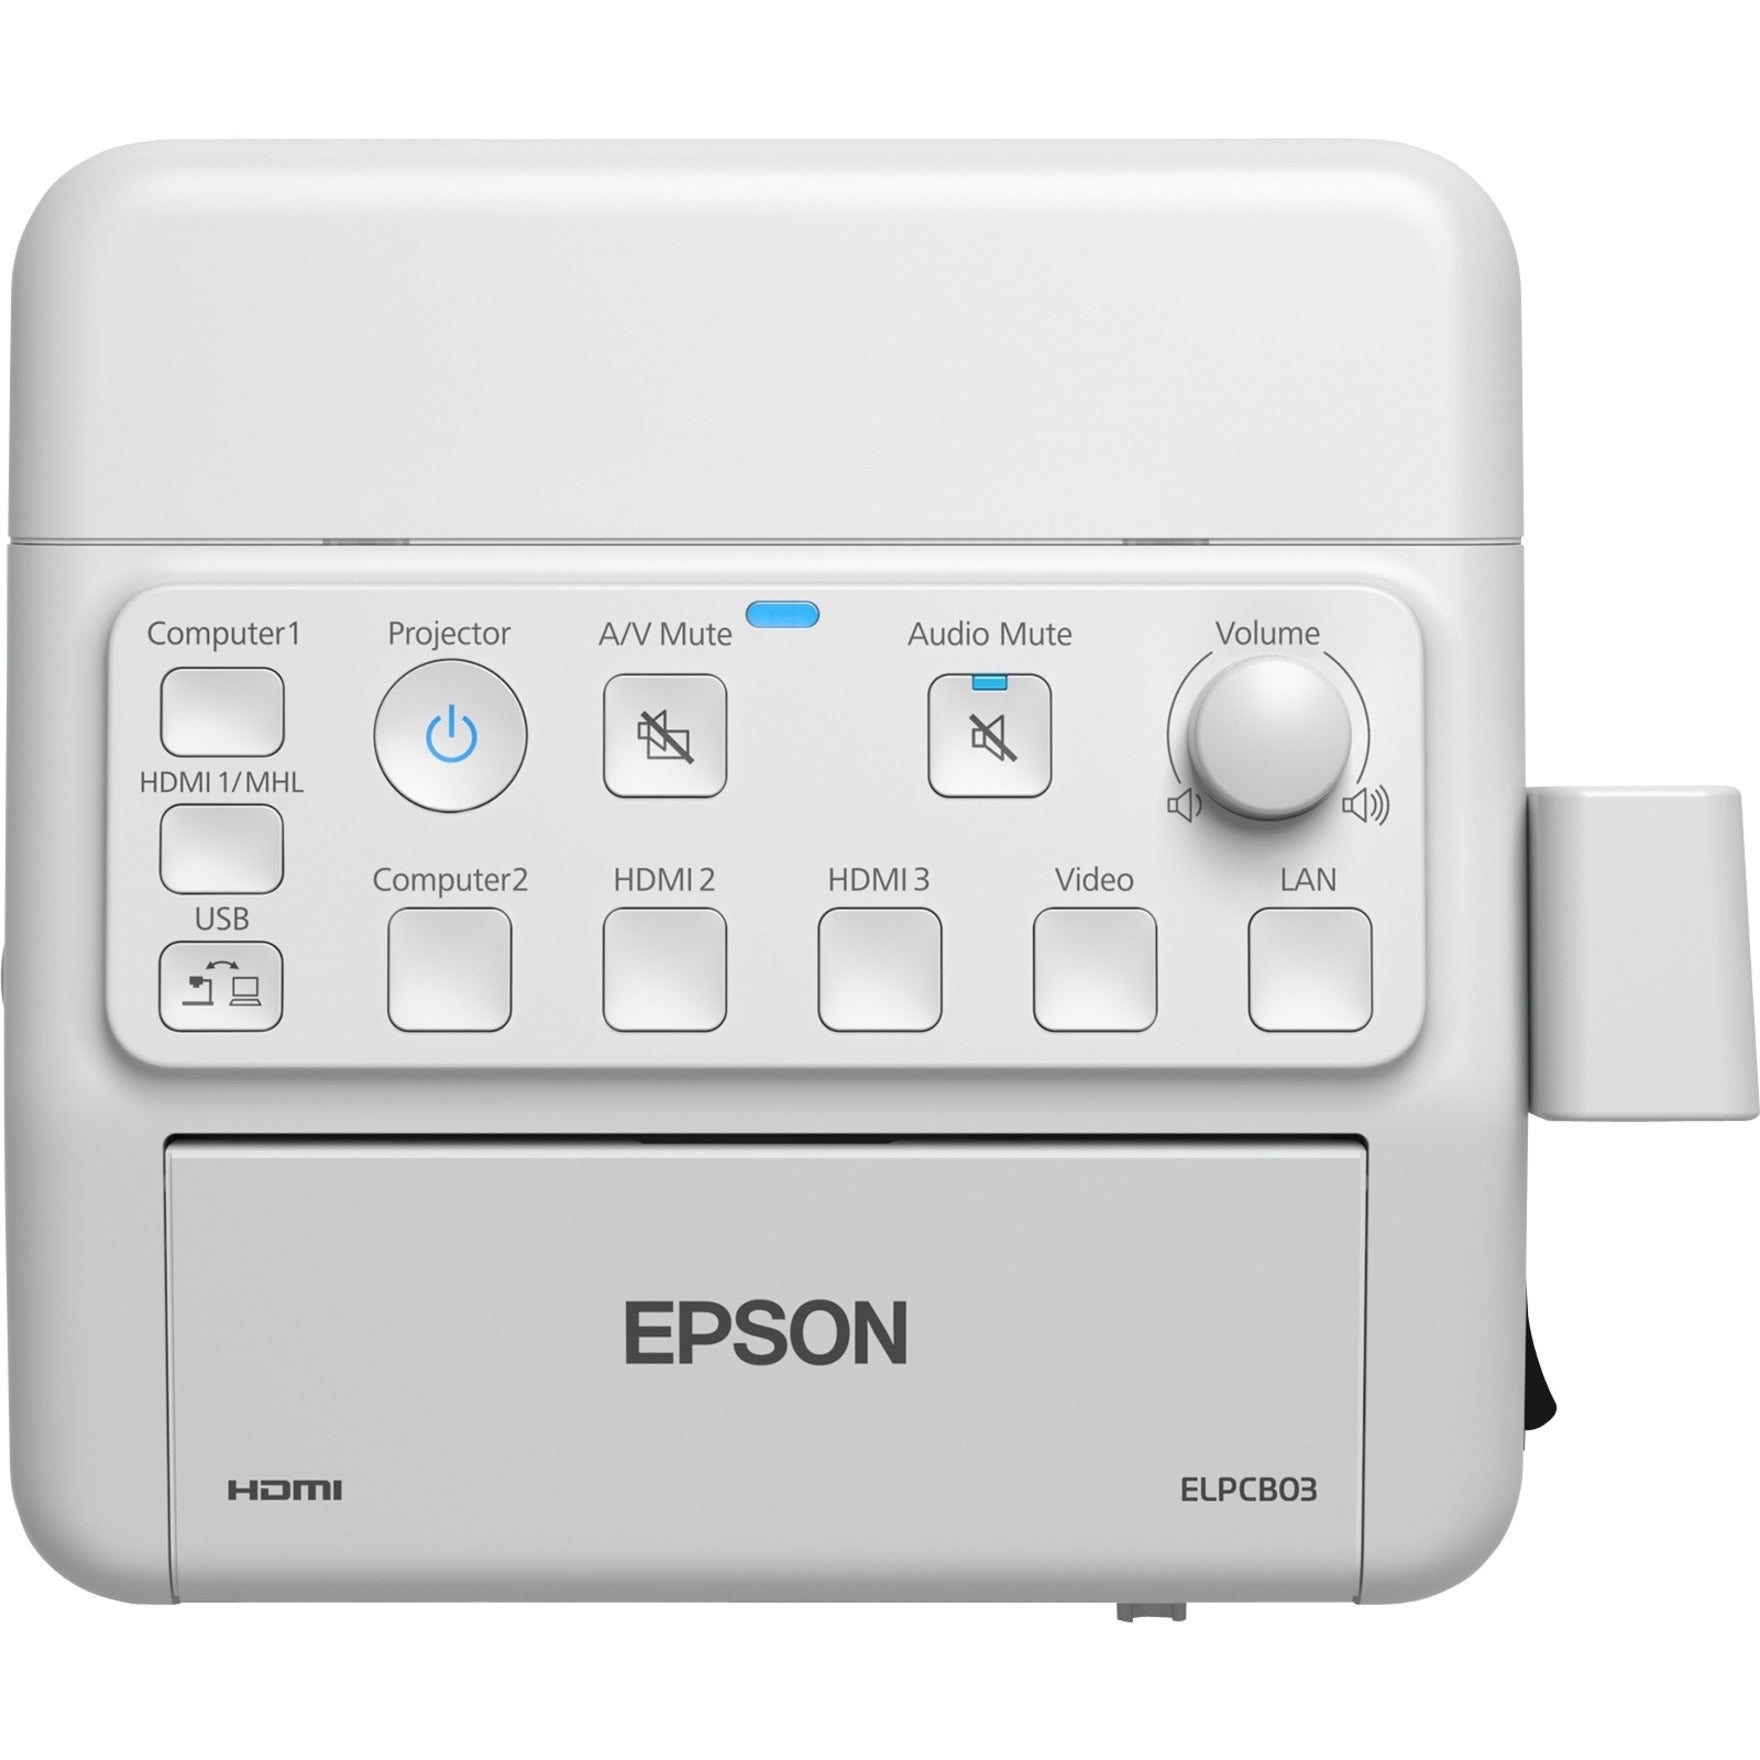 爱普生 (Epson) V12H927020 PowerLite Pilot 3 连接和控制盒，简单的投影仪管理和控制